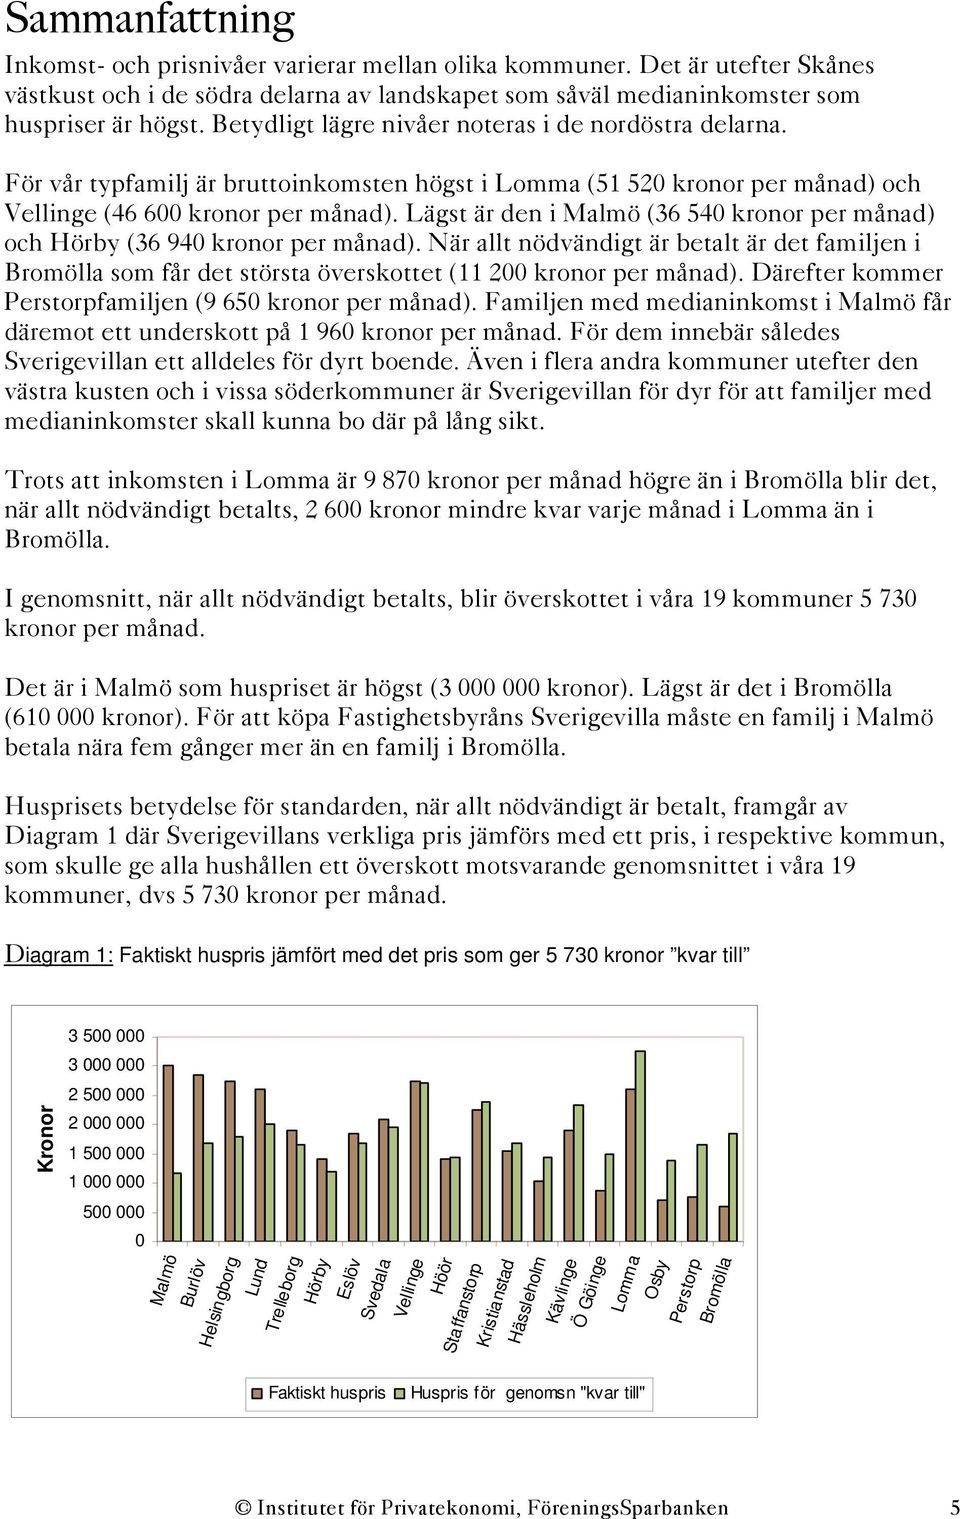 Lägst är den i Malmö (36 540 kronor per månad) och Hörby (36 940 kronor per månad). När allt nödvändigt är betalt är det familjen i Bromölla som får det största överskottet (11 200 kronor per månad).